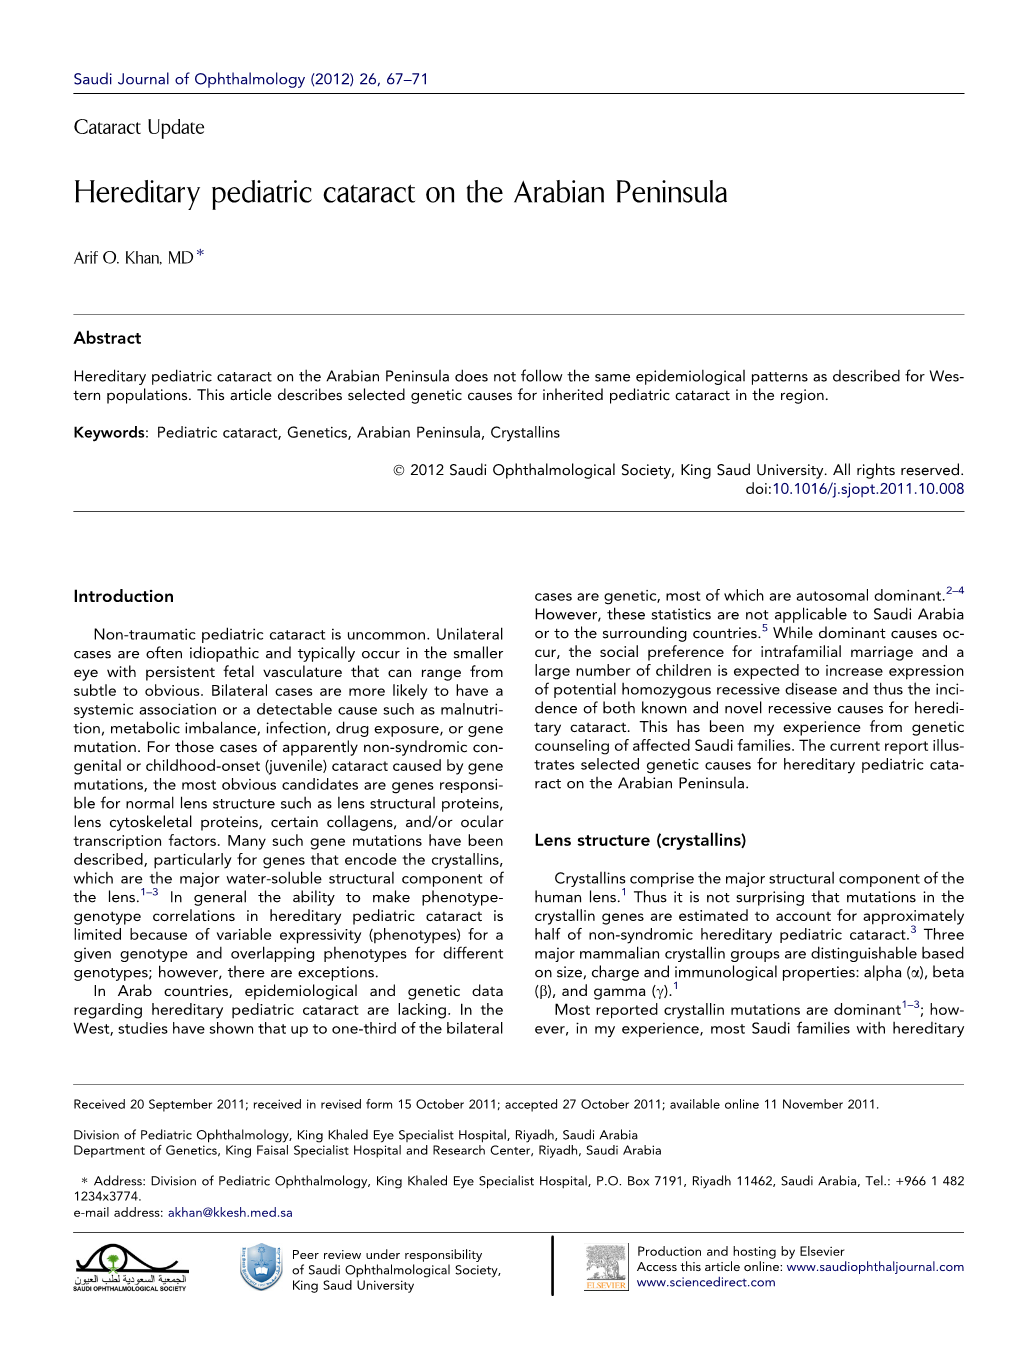 Hereditary Pediatric Cataract on the Arabian Peninsula